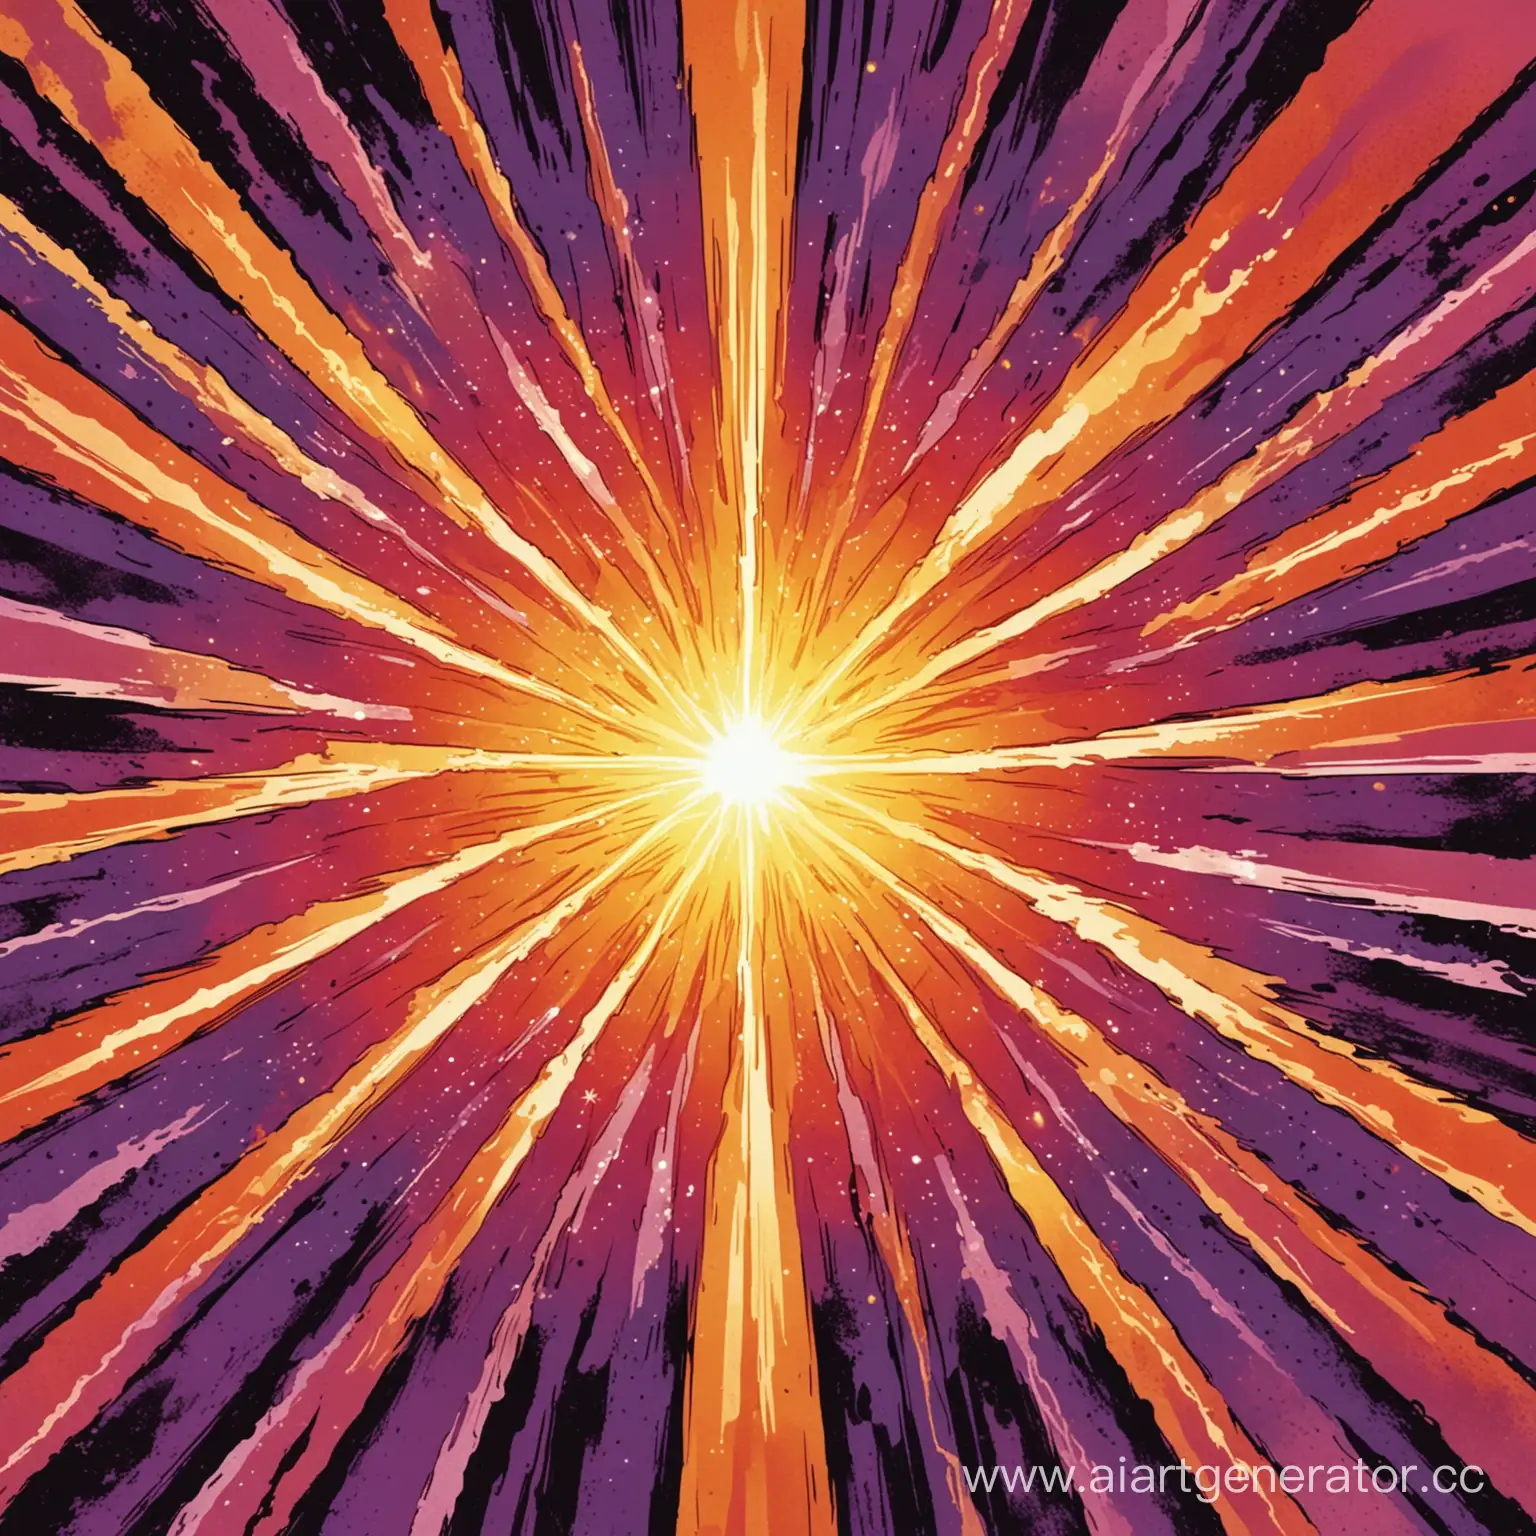 Картинка для постера как в комиксах с фиолетовым фоном, 7-8 красно-оранжевых лучей вылетающих из центра в разные стороны и жёлтое пламя по центру на переднем плане, перекрывающее всё остальное
